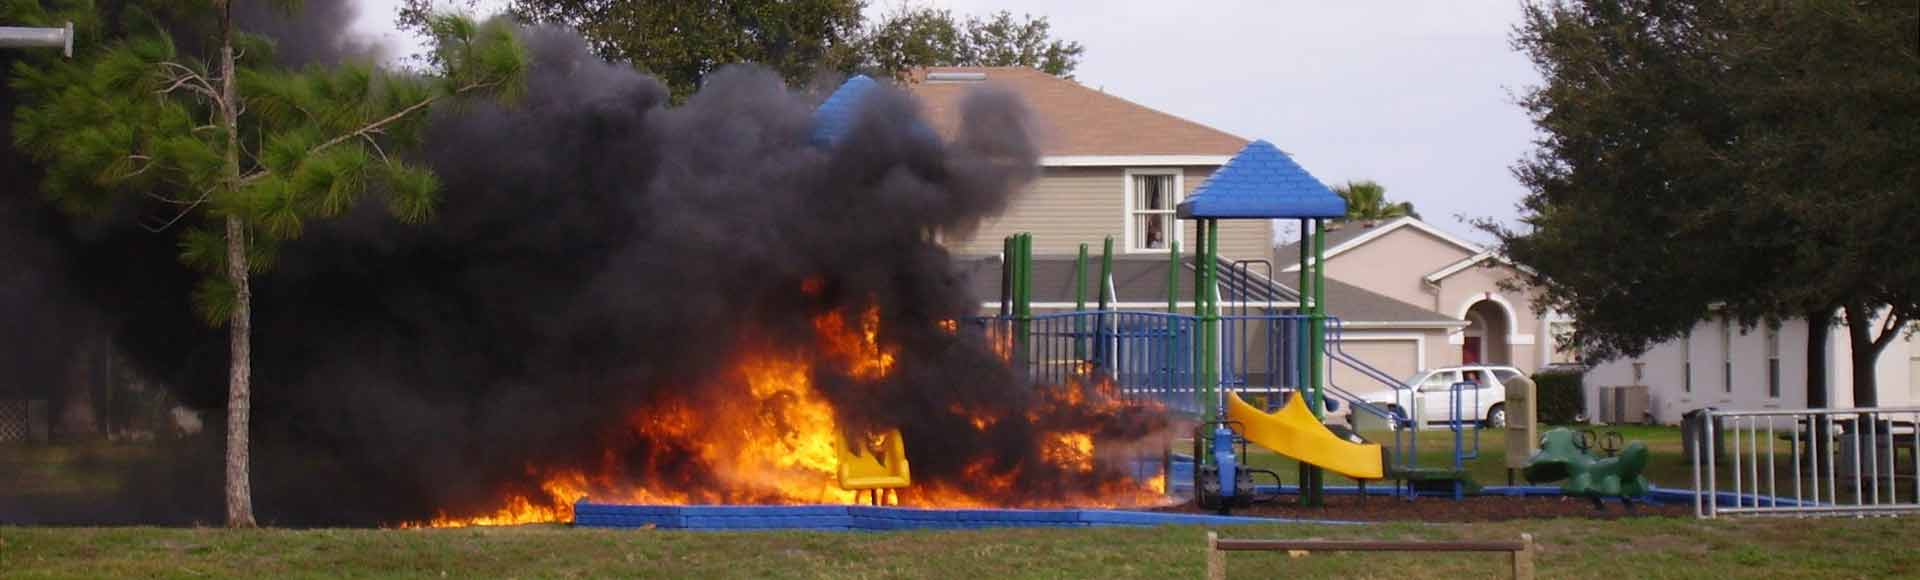 Playground Arson